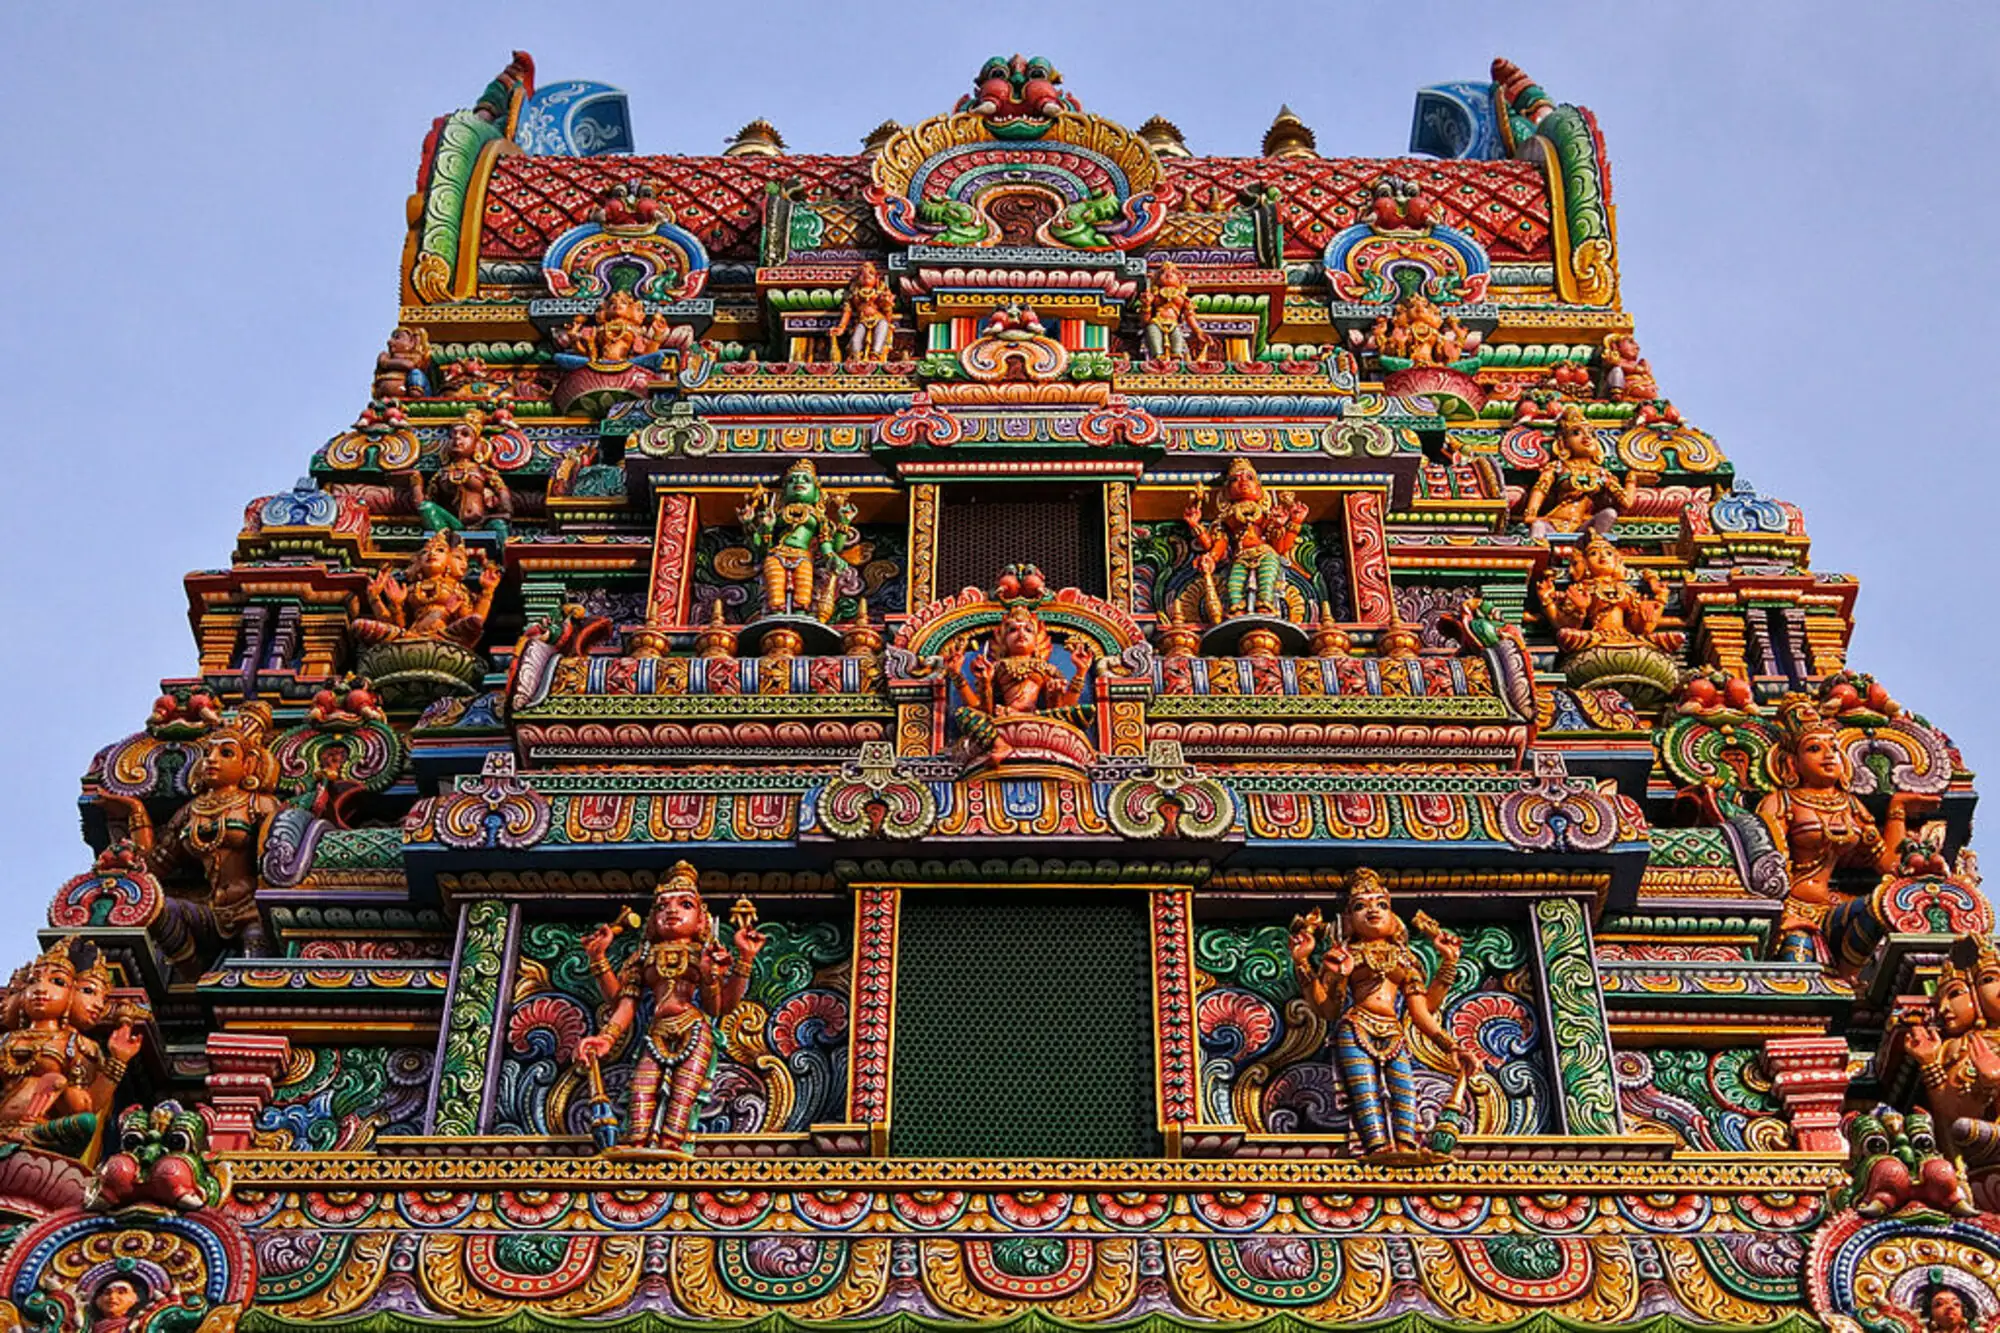 曼谷馬里安曼印度廟坐落於曼谷是隆路